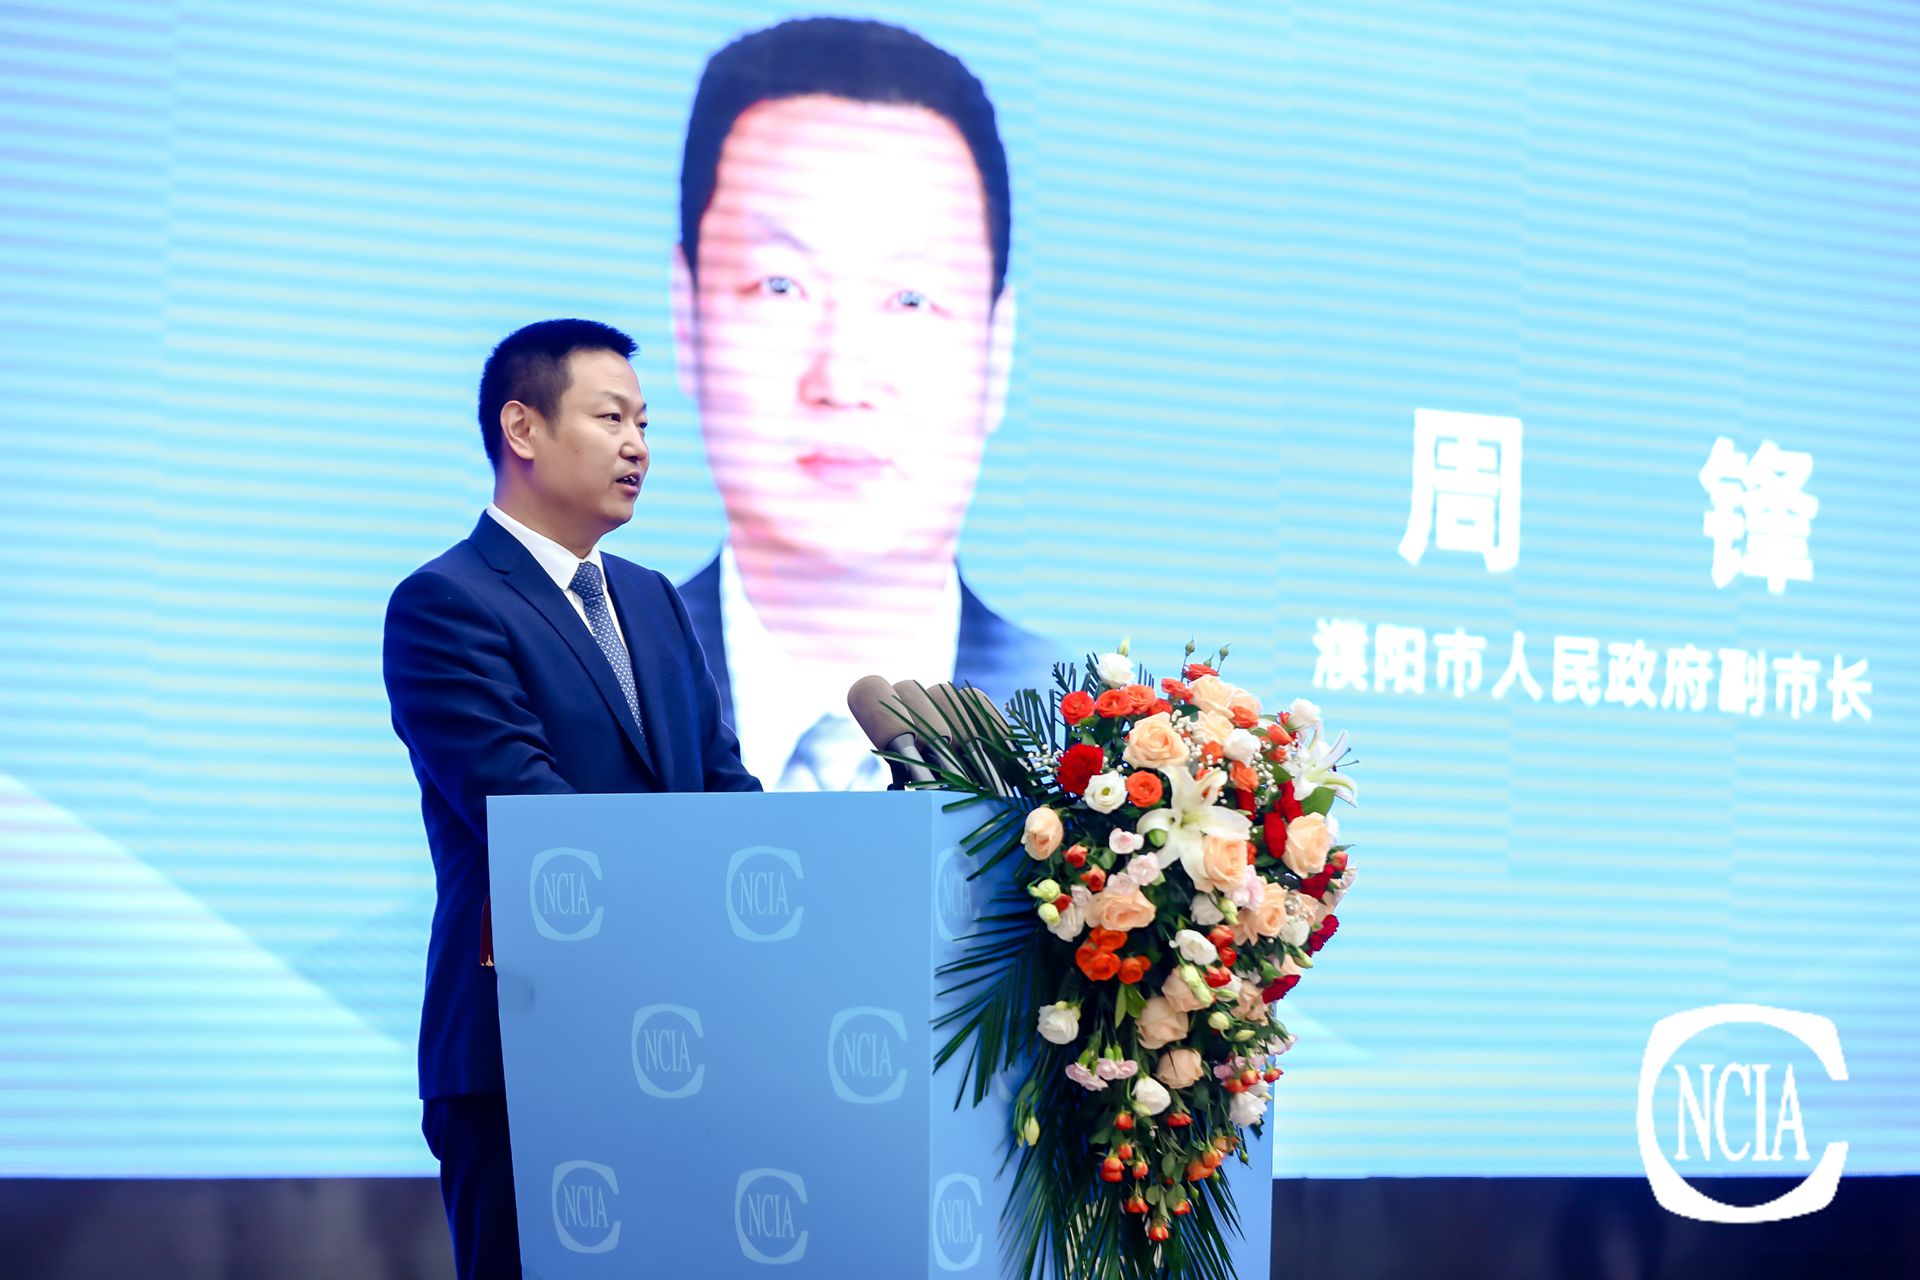 濮阳市政府副市长周锋主持大会开幕式